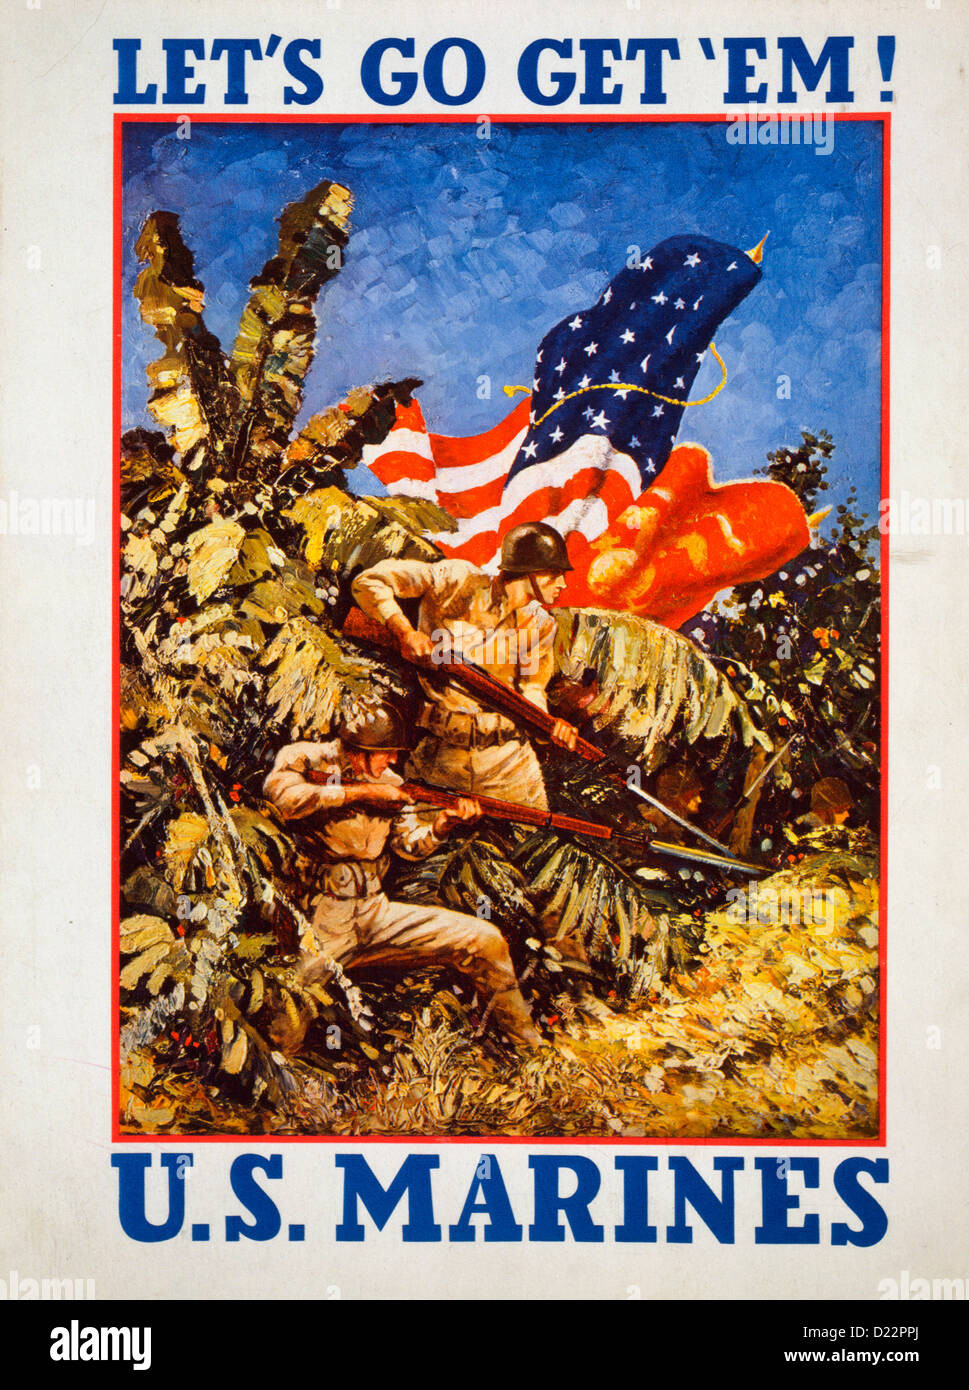 Andiamo per ottenere 'em! Stati Uniti Marines / WWII USA Marines Poster, 1942 Poster Marines cuscinetto fucili con baionette e bandiere in una giungla. Foto Stock